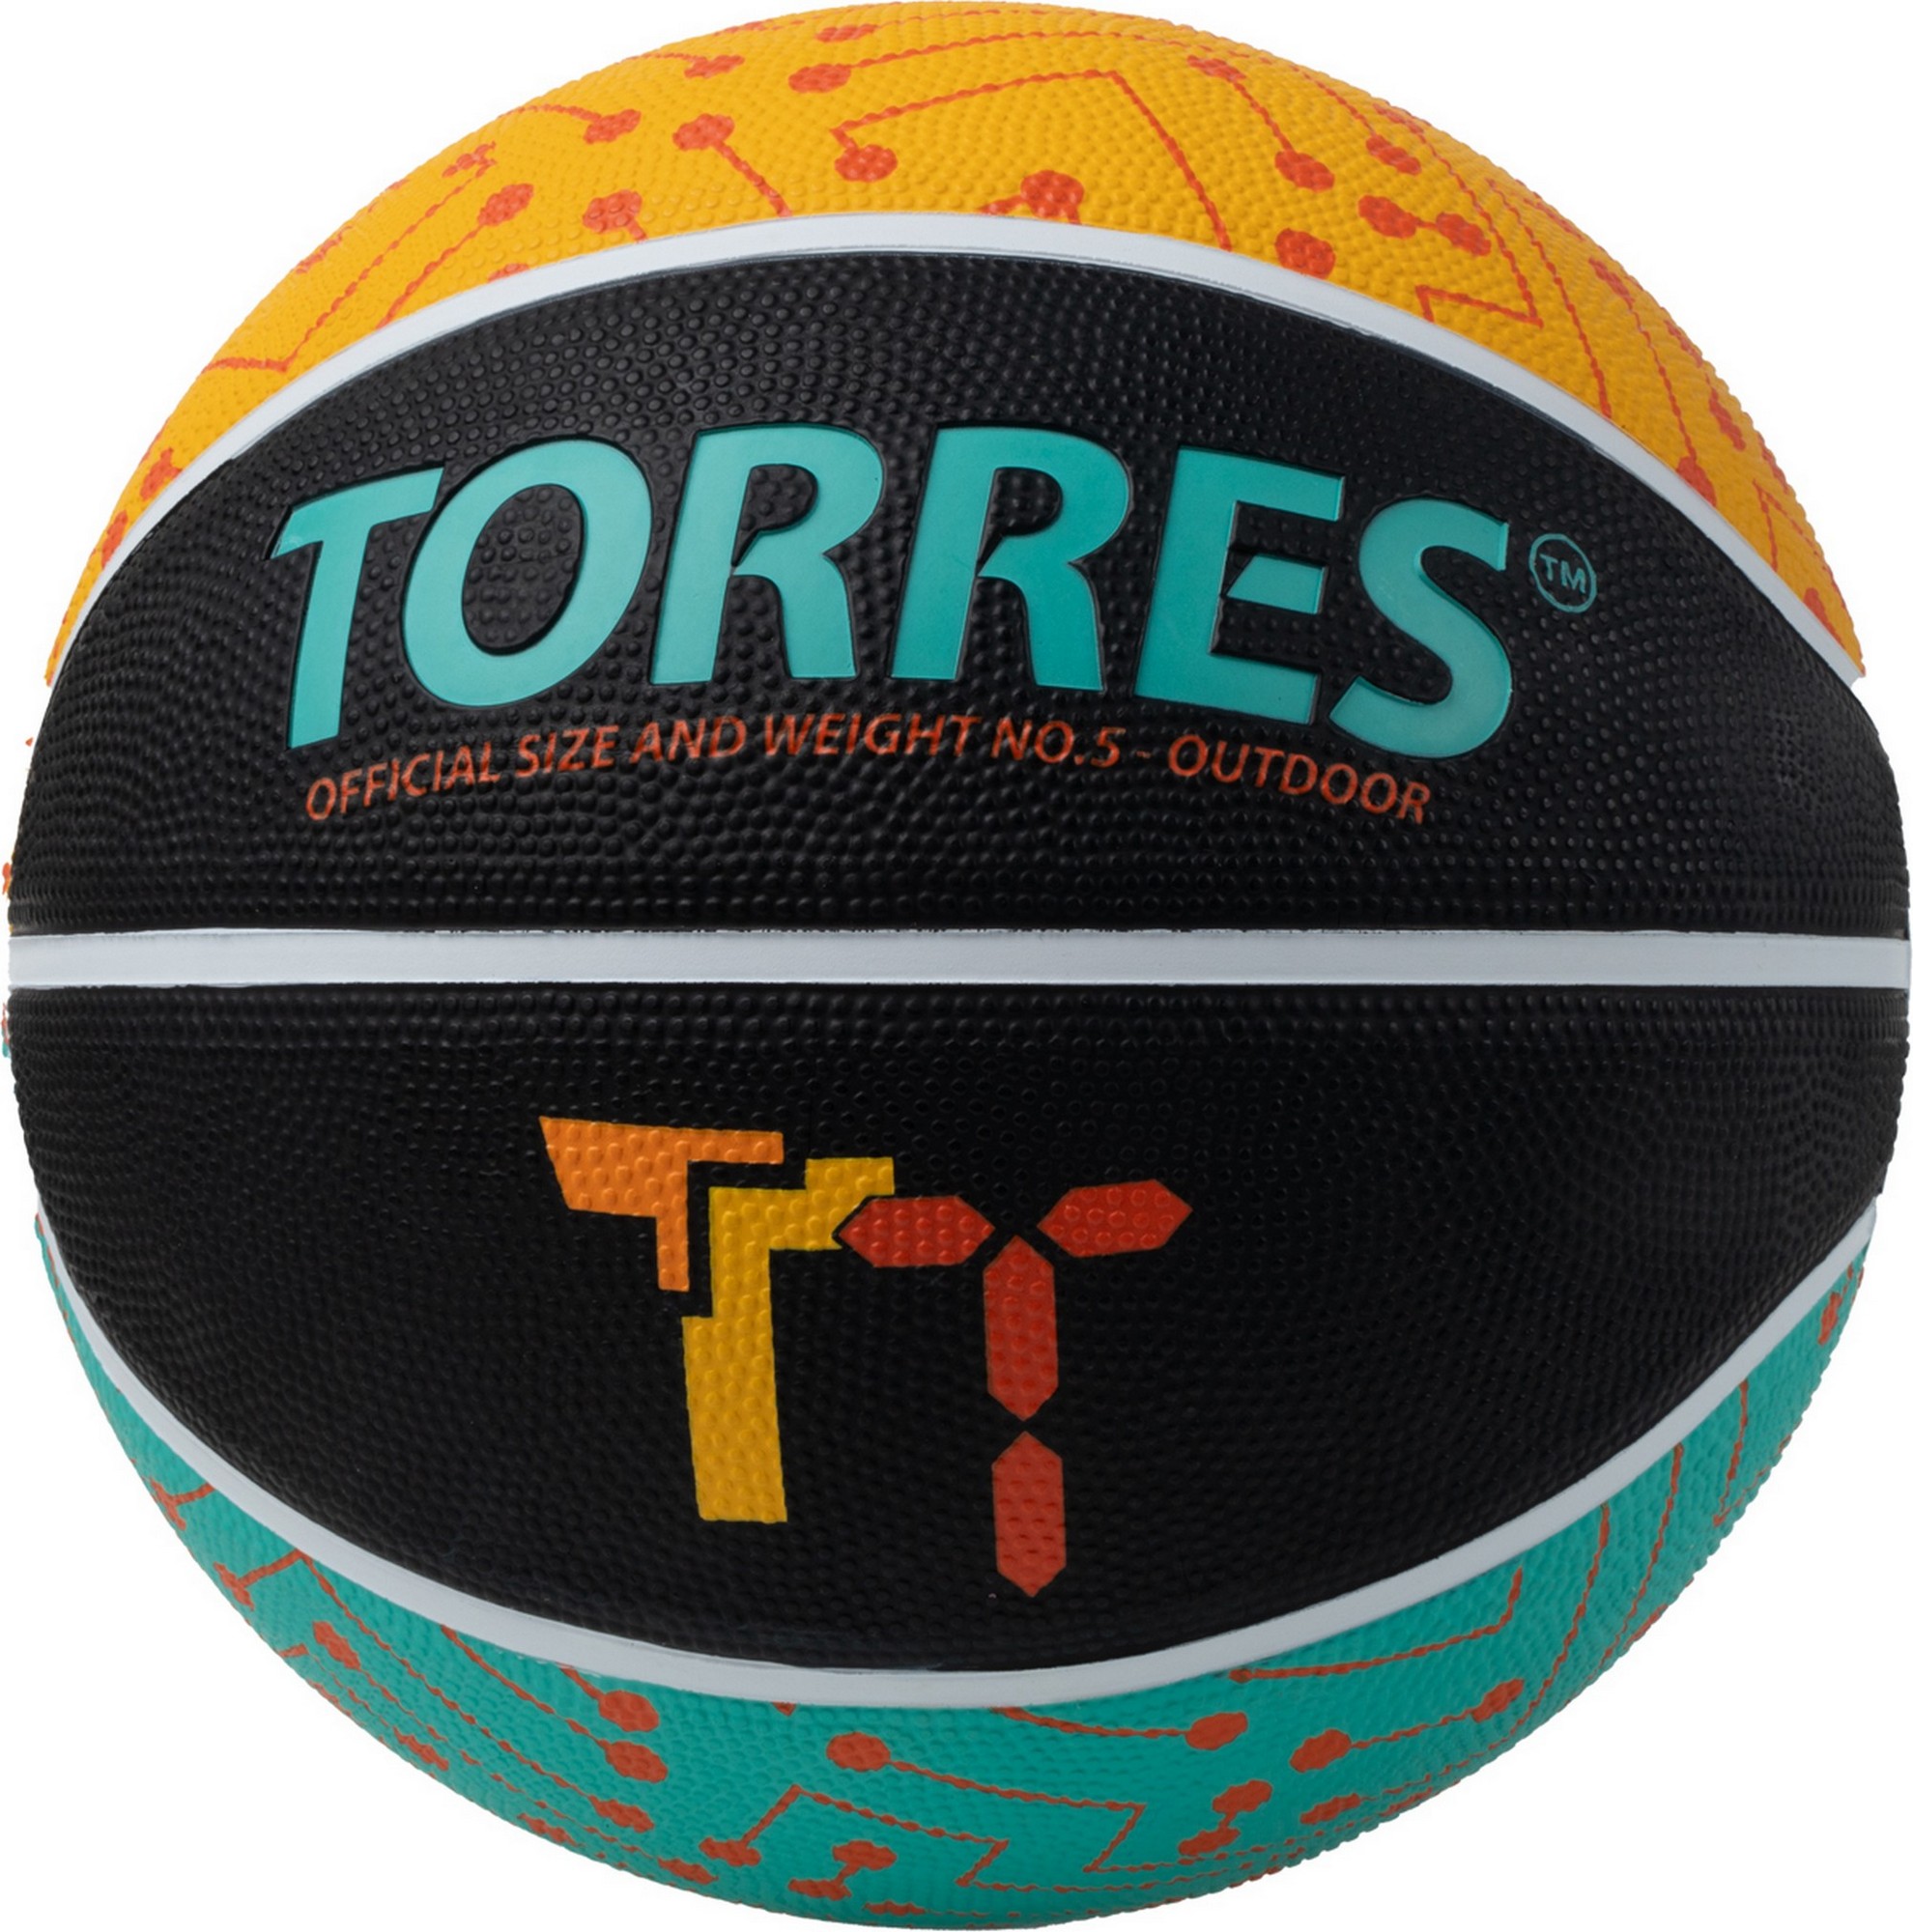   Torres TT B023155 .5